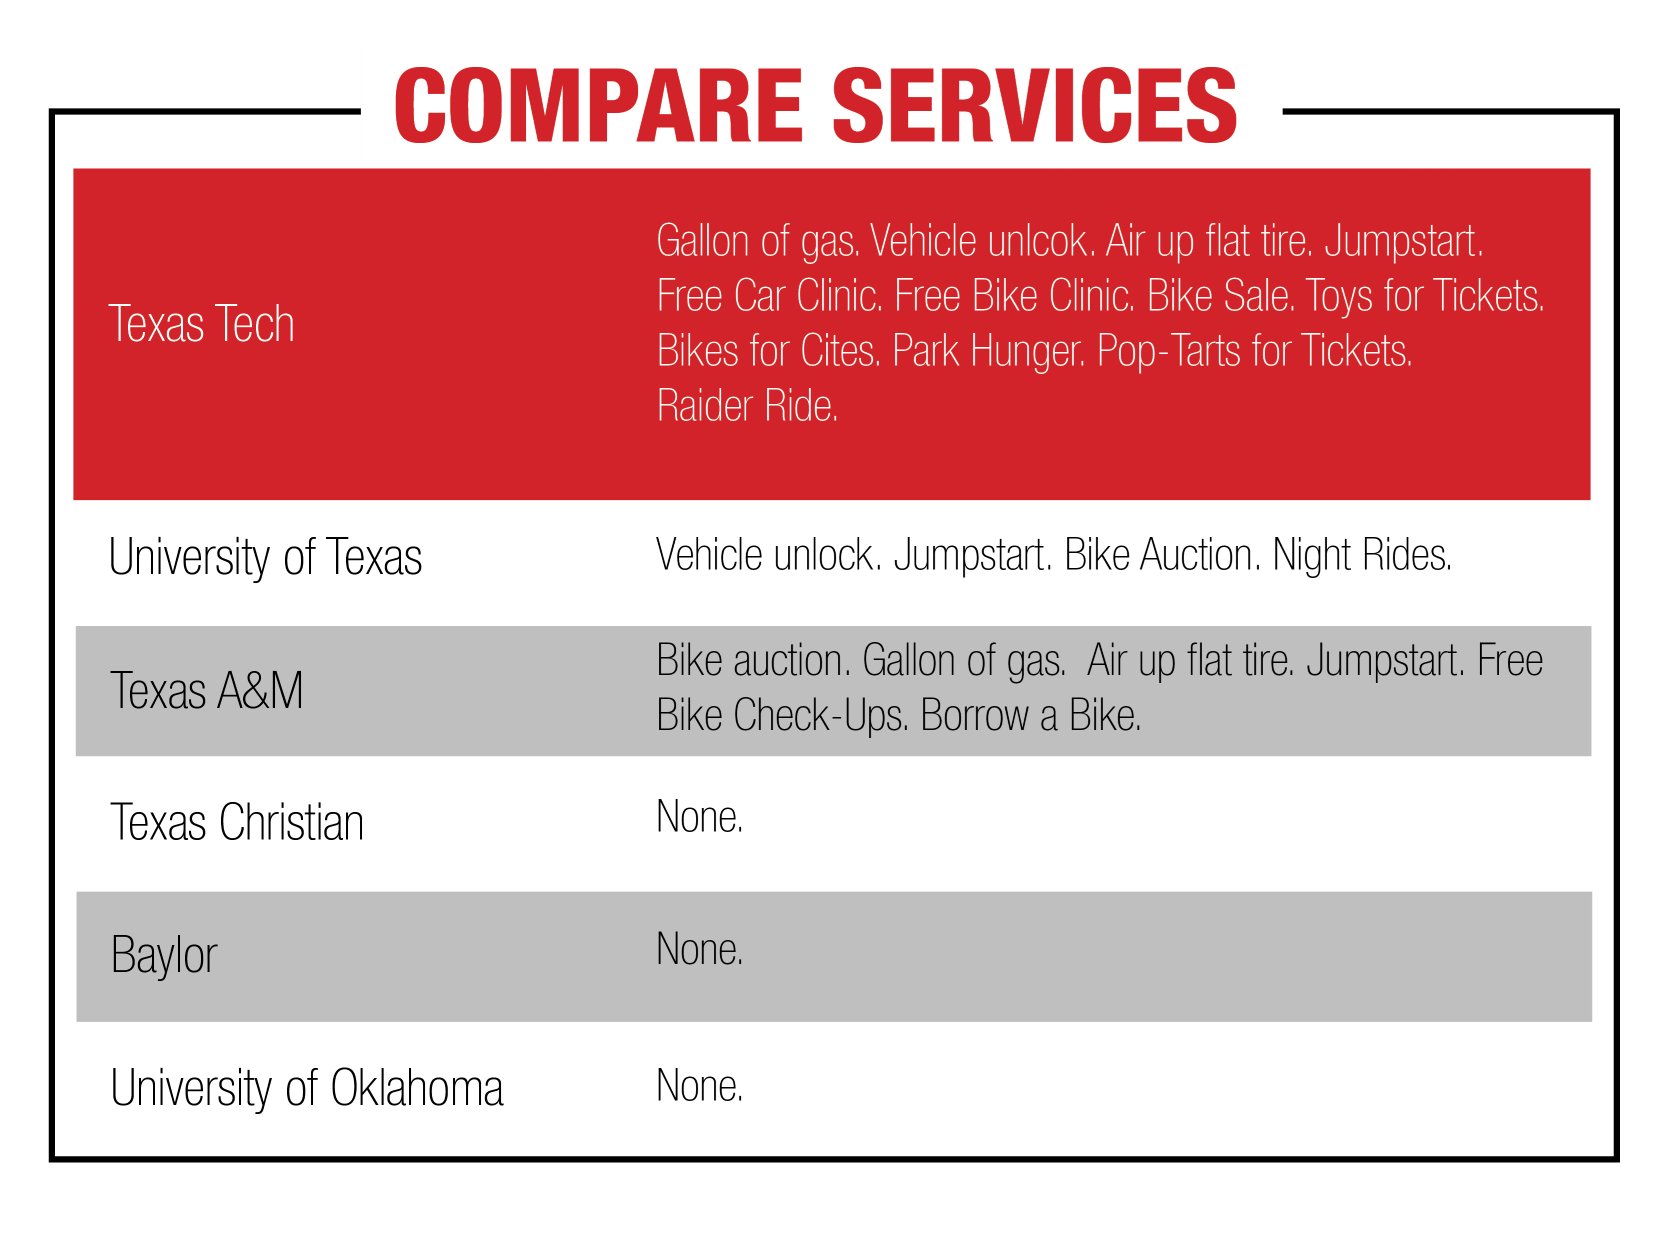 Compare Services